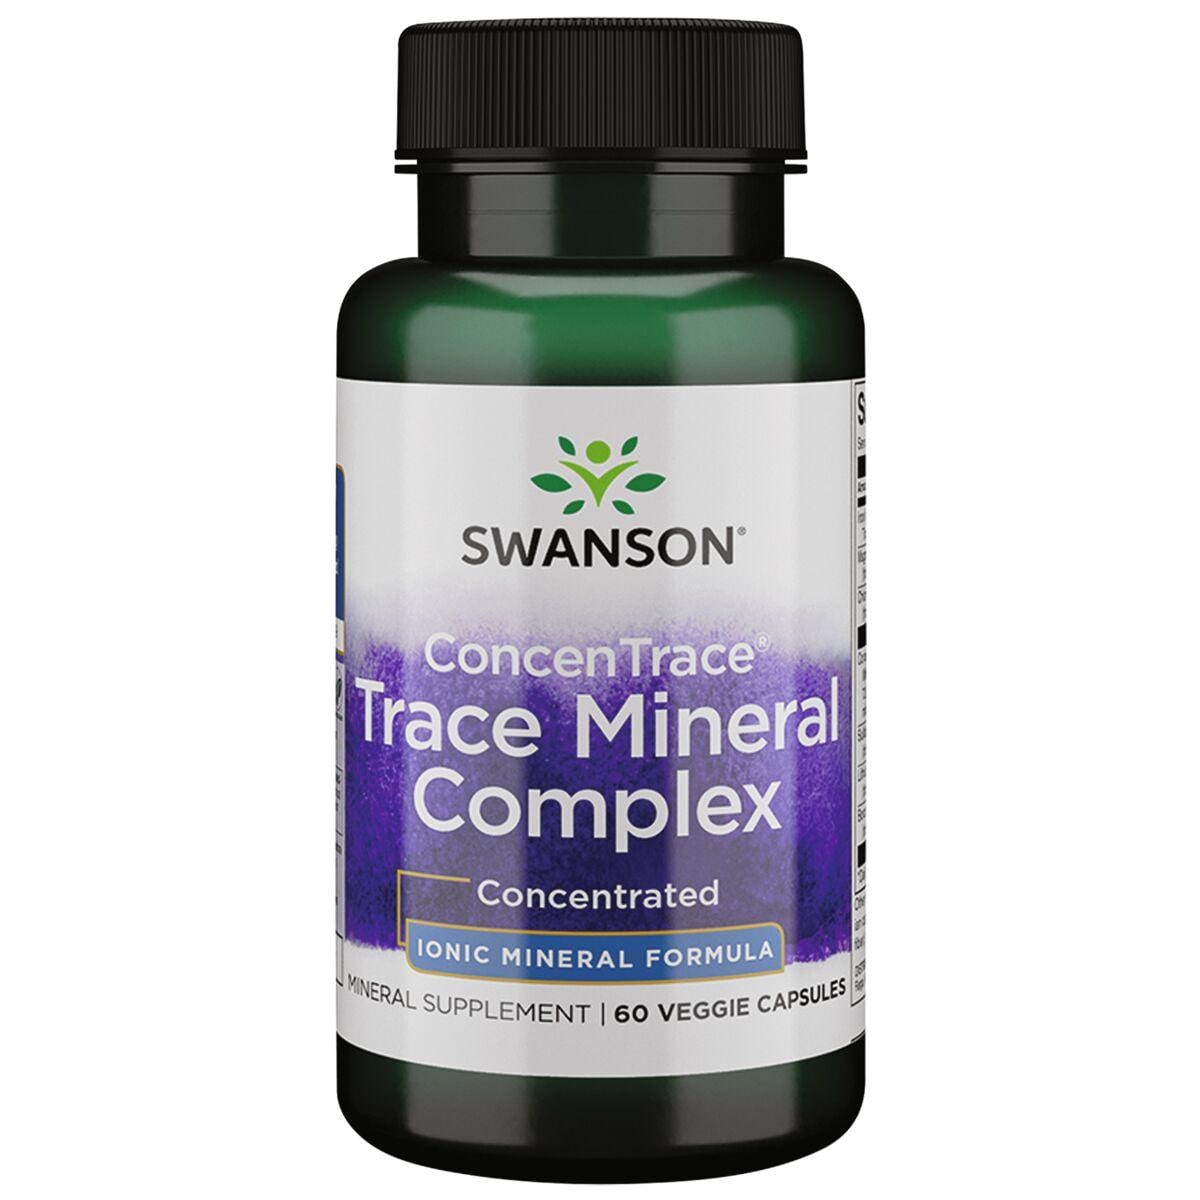 Swanson Ultra Concentrace Trace Mineral Complex Vitamin | 60 Veg Caps